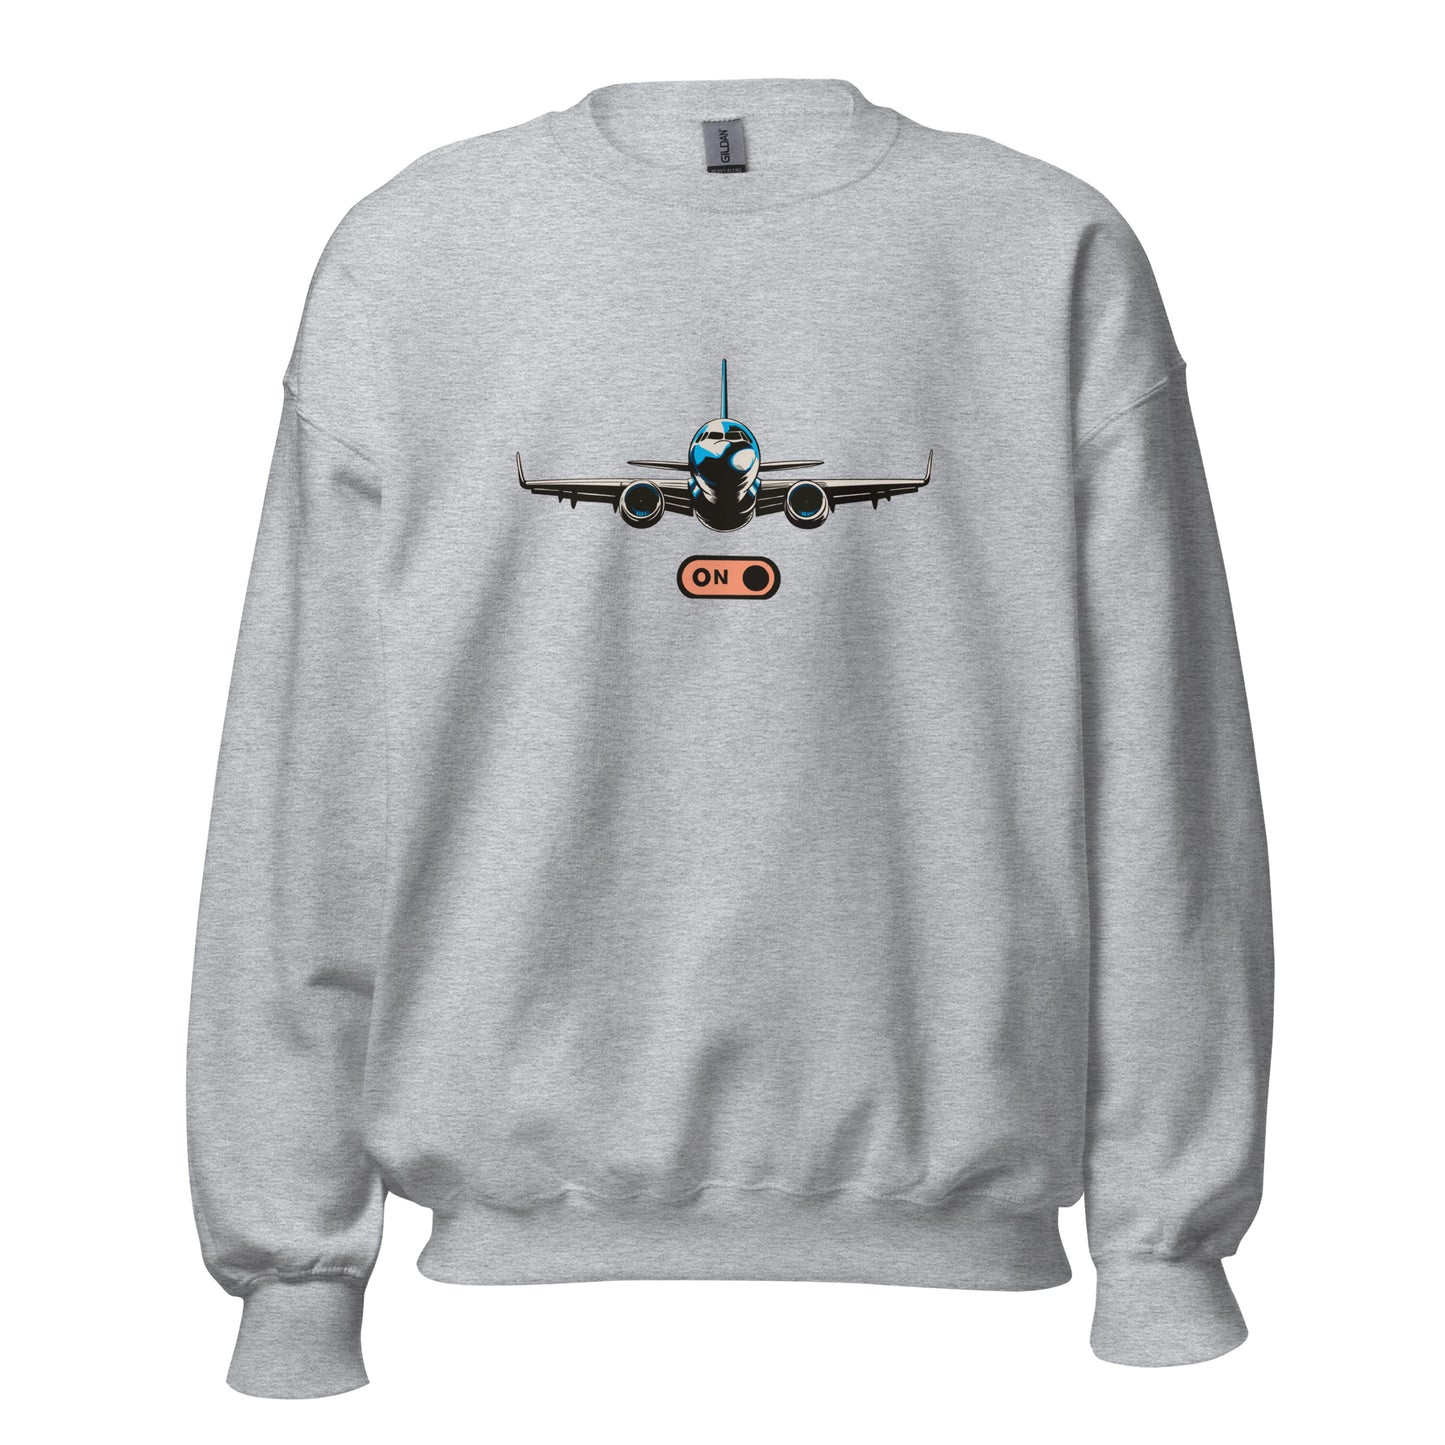 Aeroplane Mode - Unisex Sweatshirt